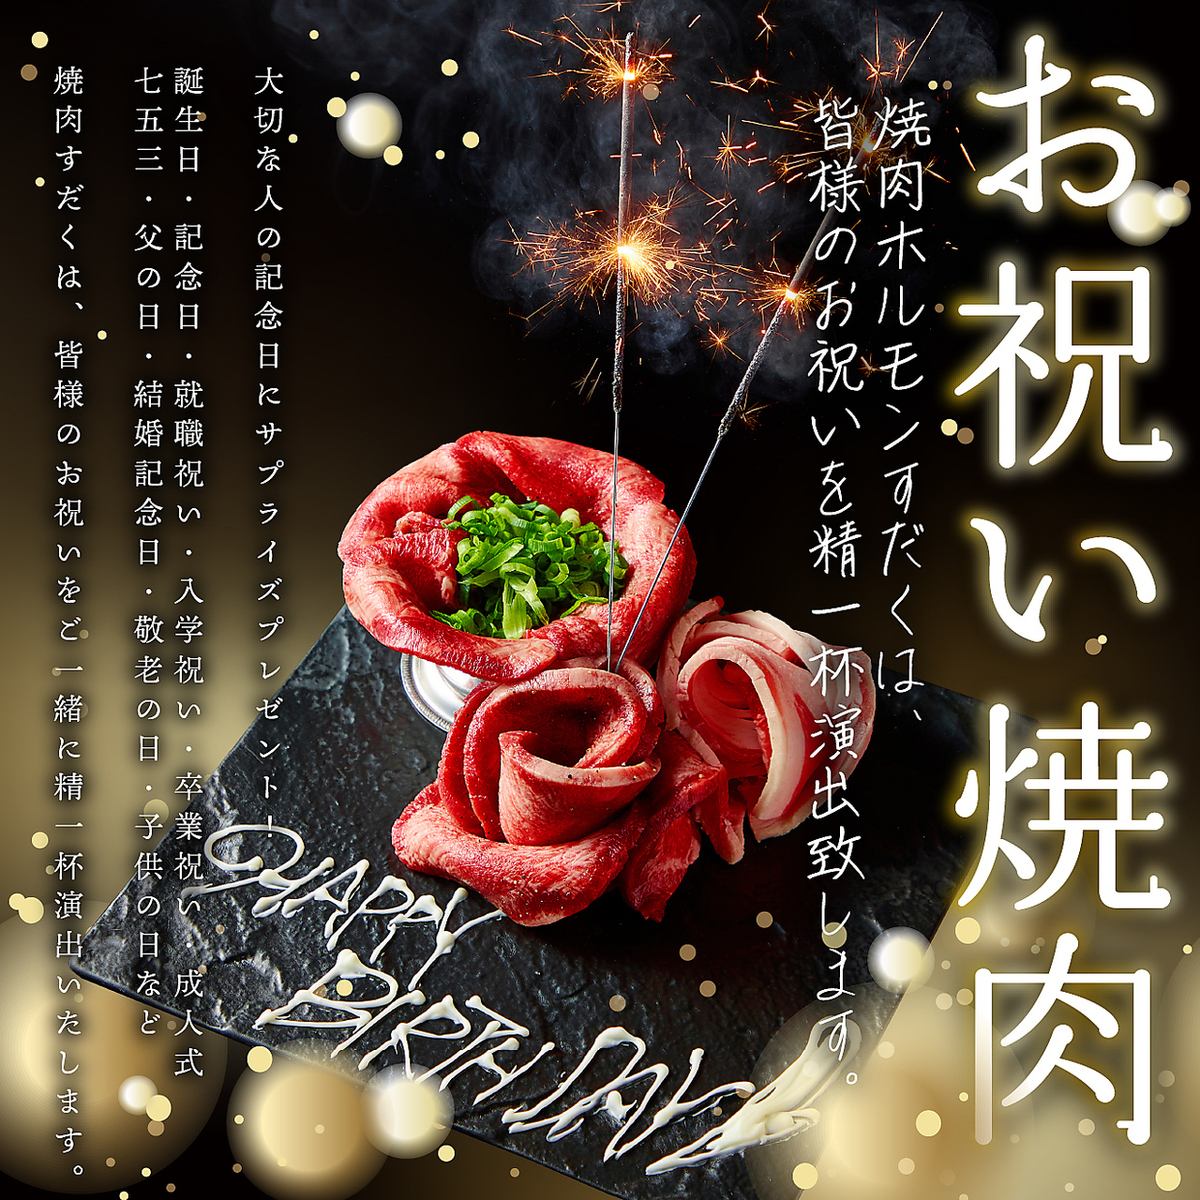 ◇近江牛×道産米の焼肉店◇ご家族でのお祝い事にご利用ください